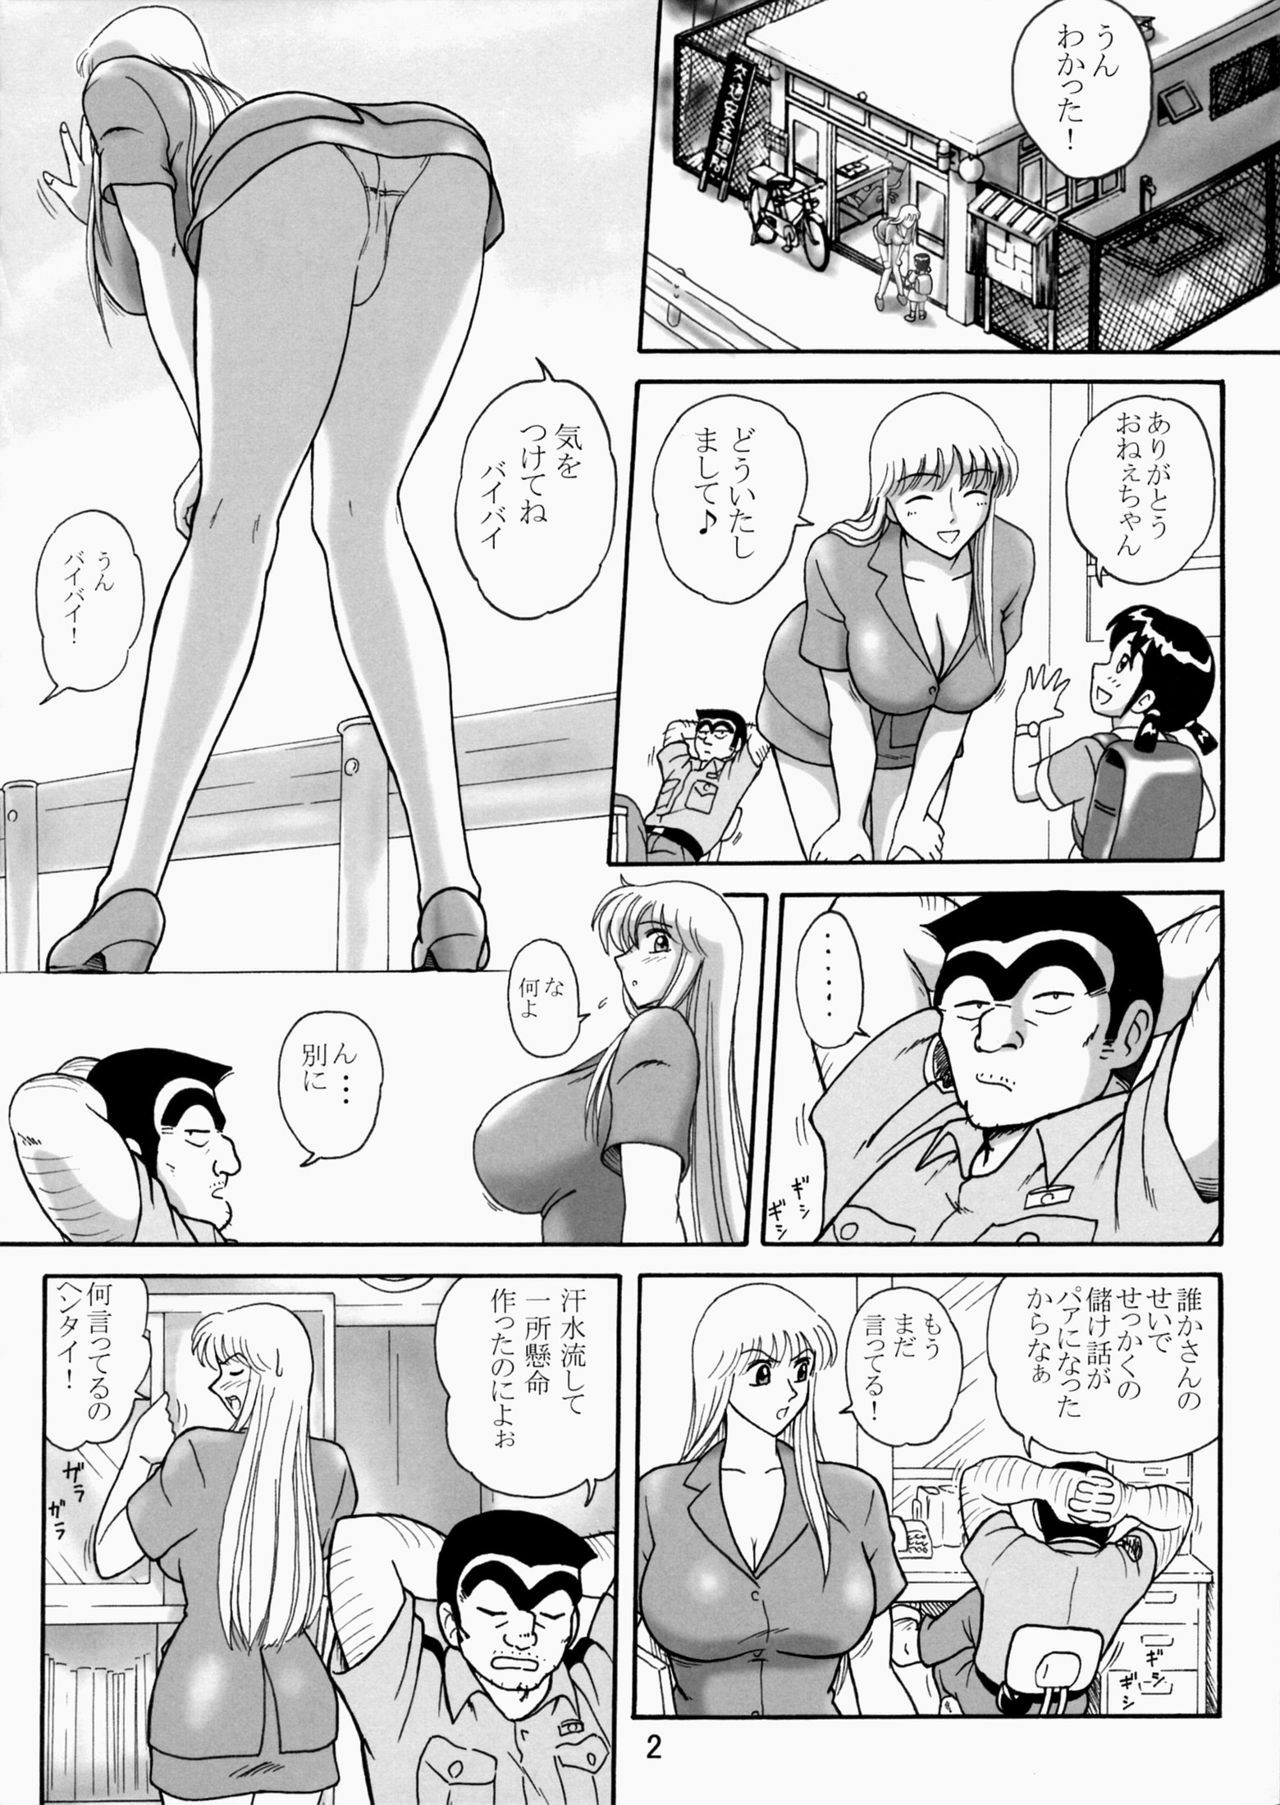 [Iwashi (Benjamin)] Uchiage Suihanki 5gouki (Kochikame) page 6 full